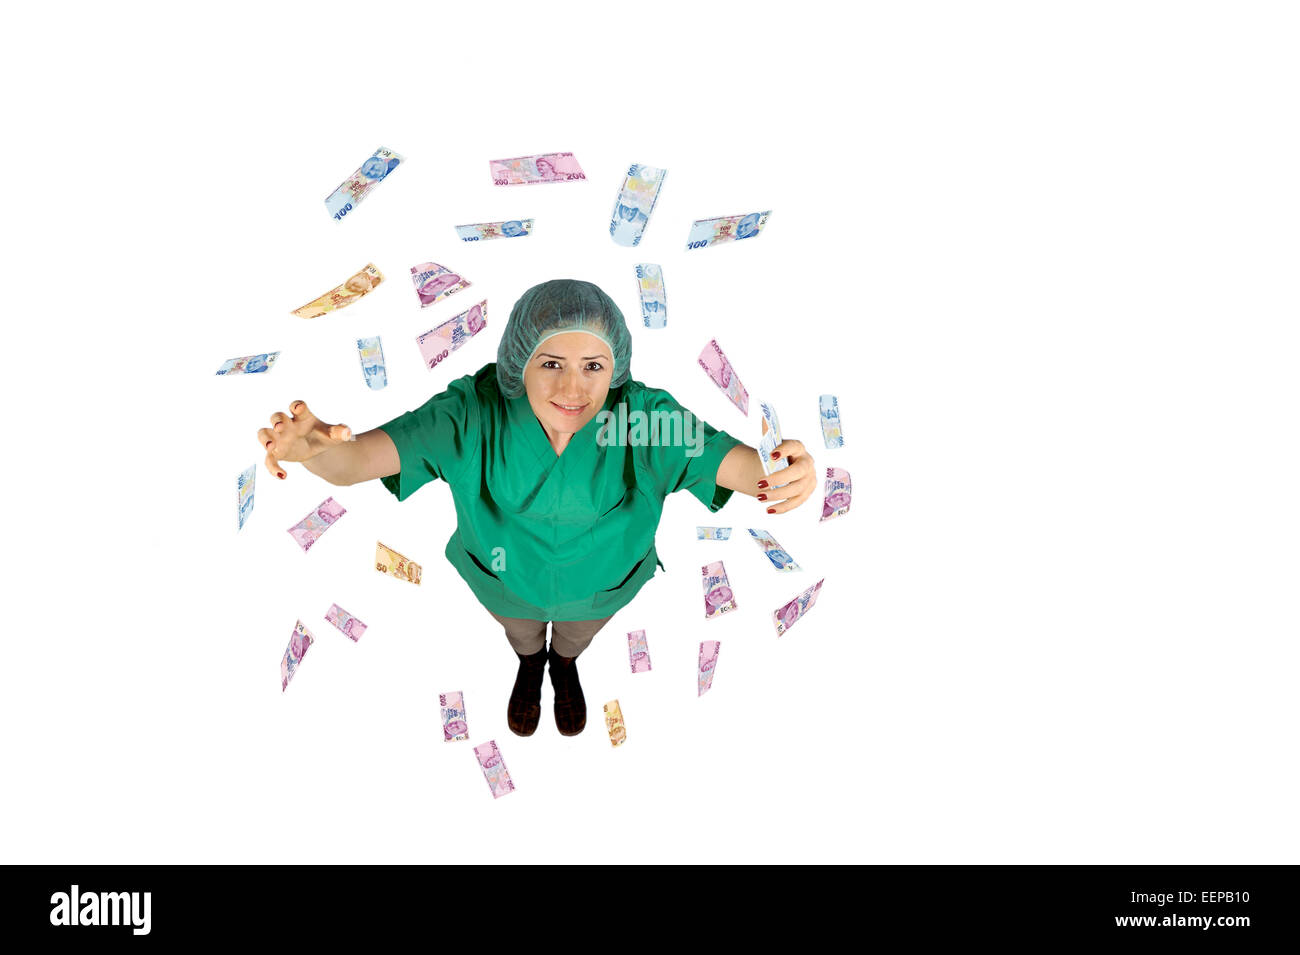 surgeon wages jackpot money flying Turkish lira isolated on white background Stock Photo